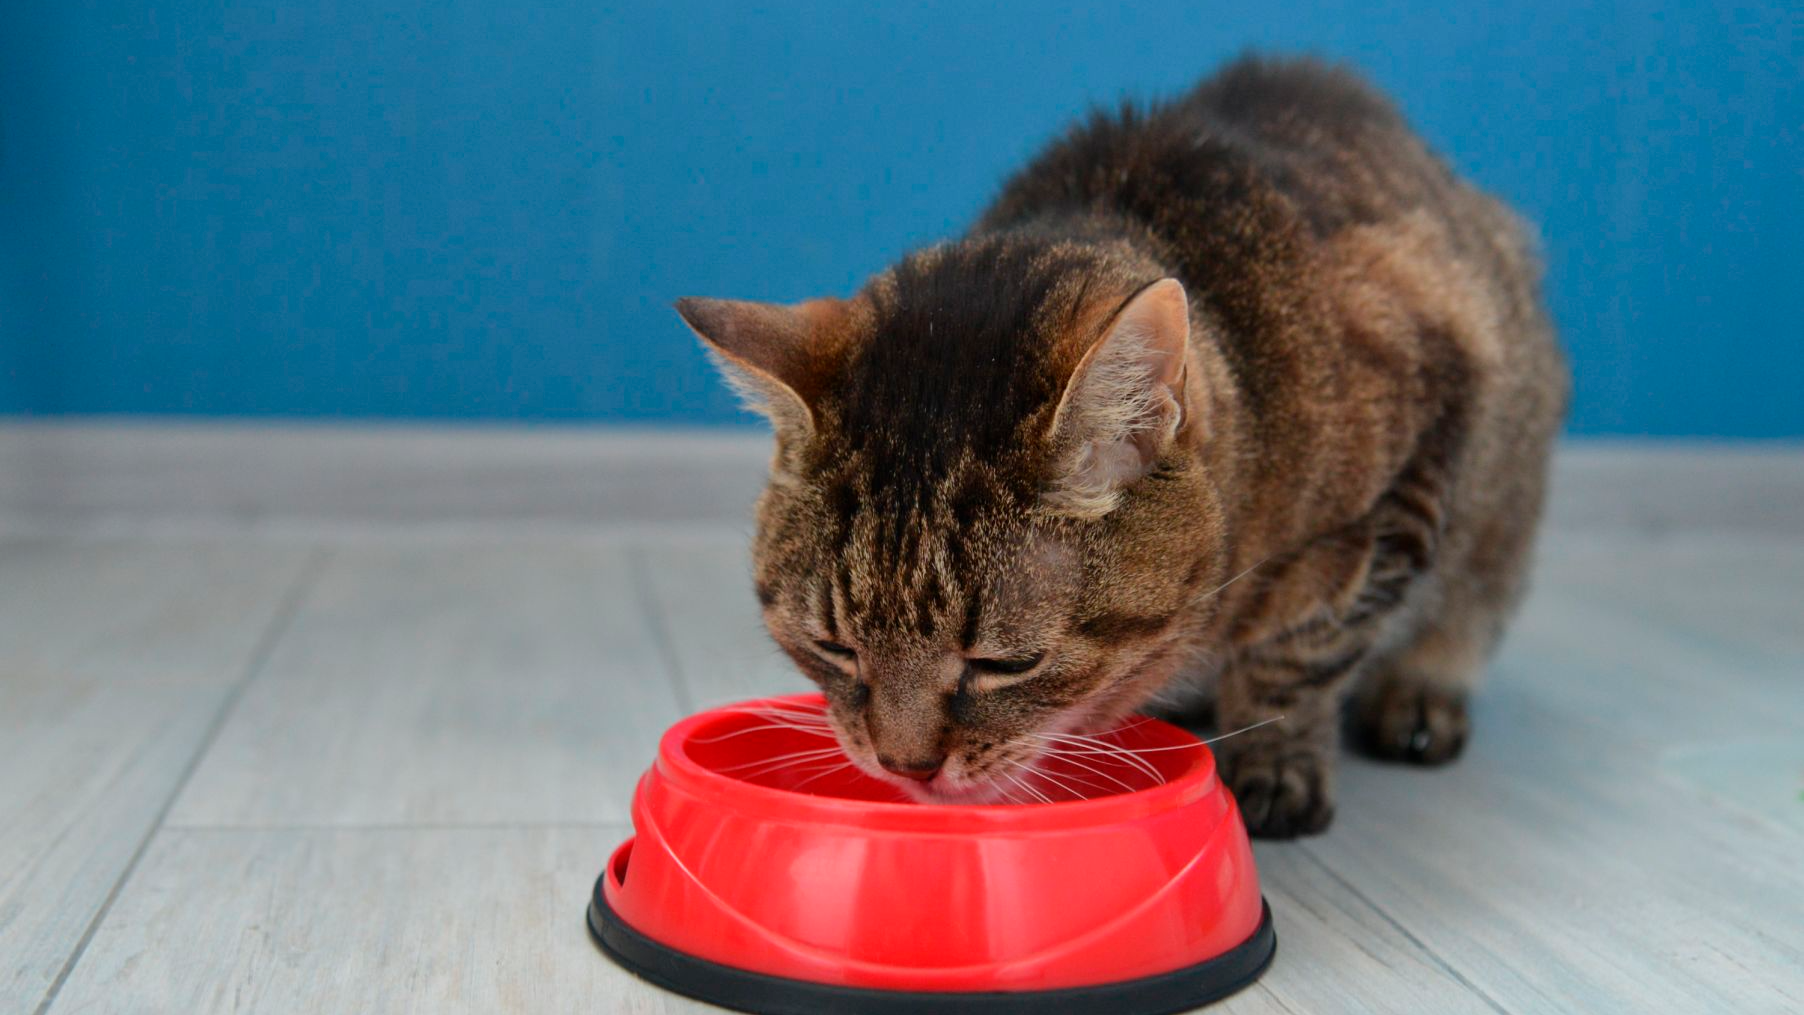 Gatto domestico che mangia da una ciotola rossa.